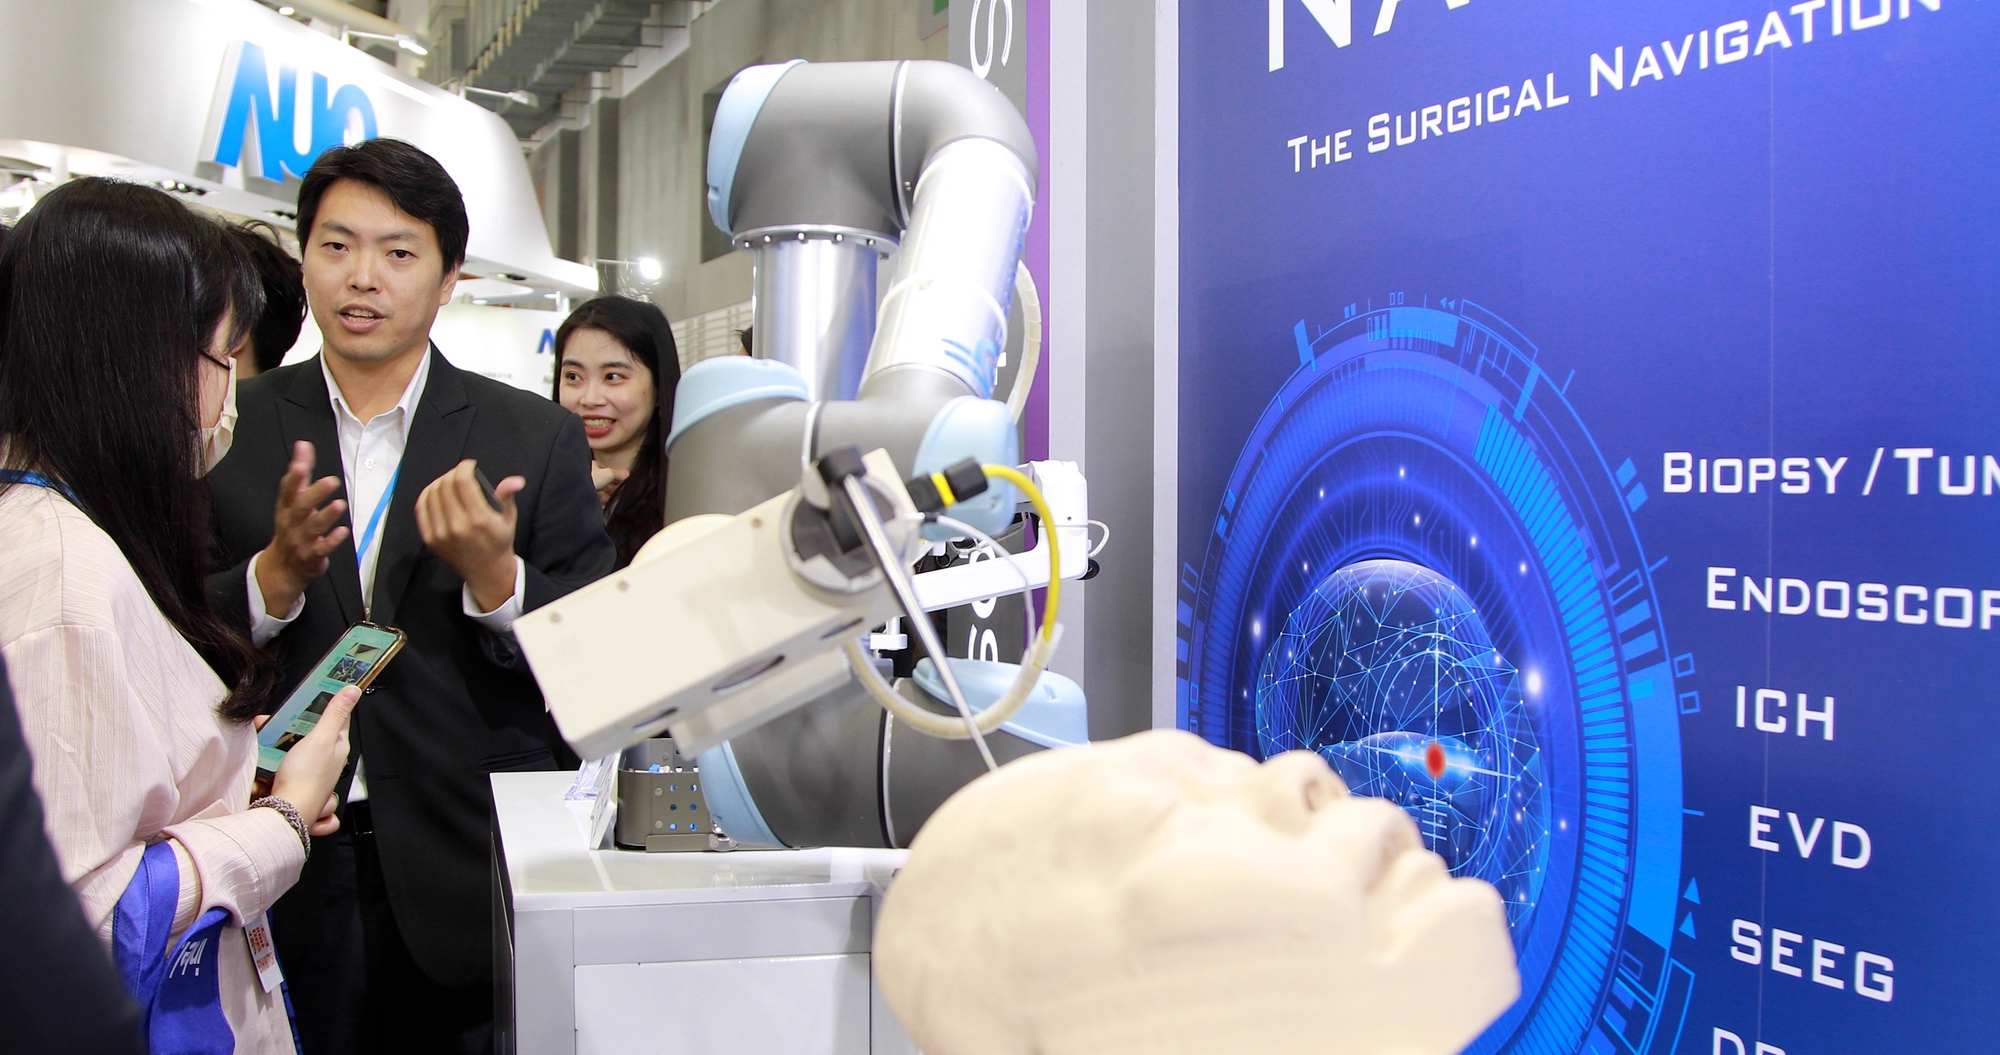 AI tiếp tục gây sốt ở hội chợ công nghệ sức khỏe lớn nhất châu Á  - Ảnh 1.